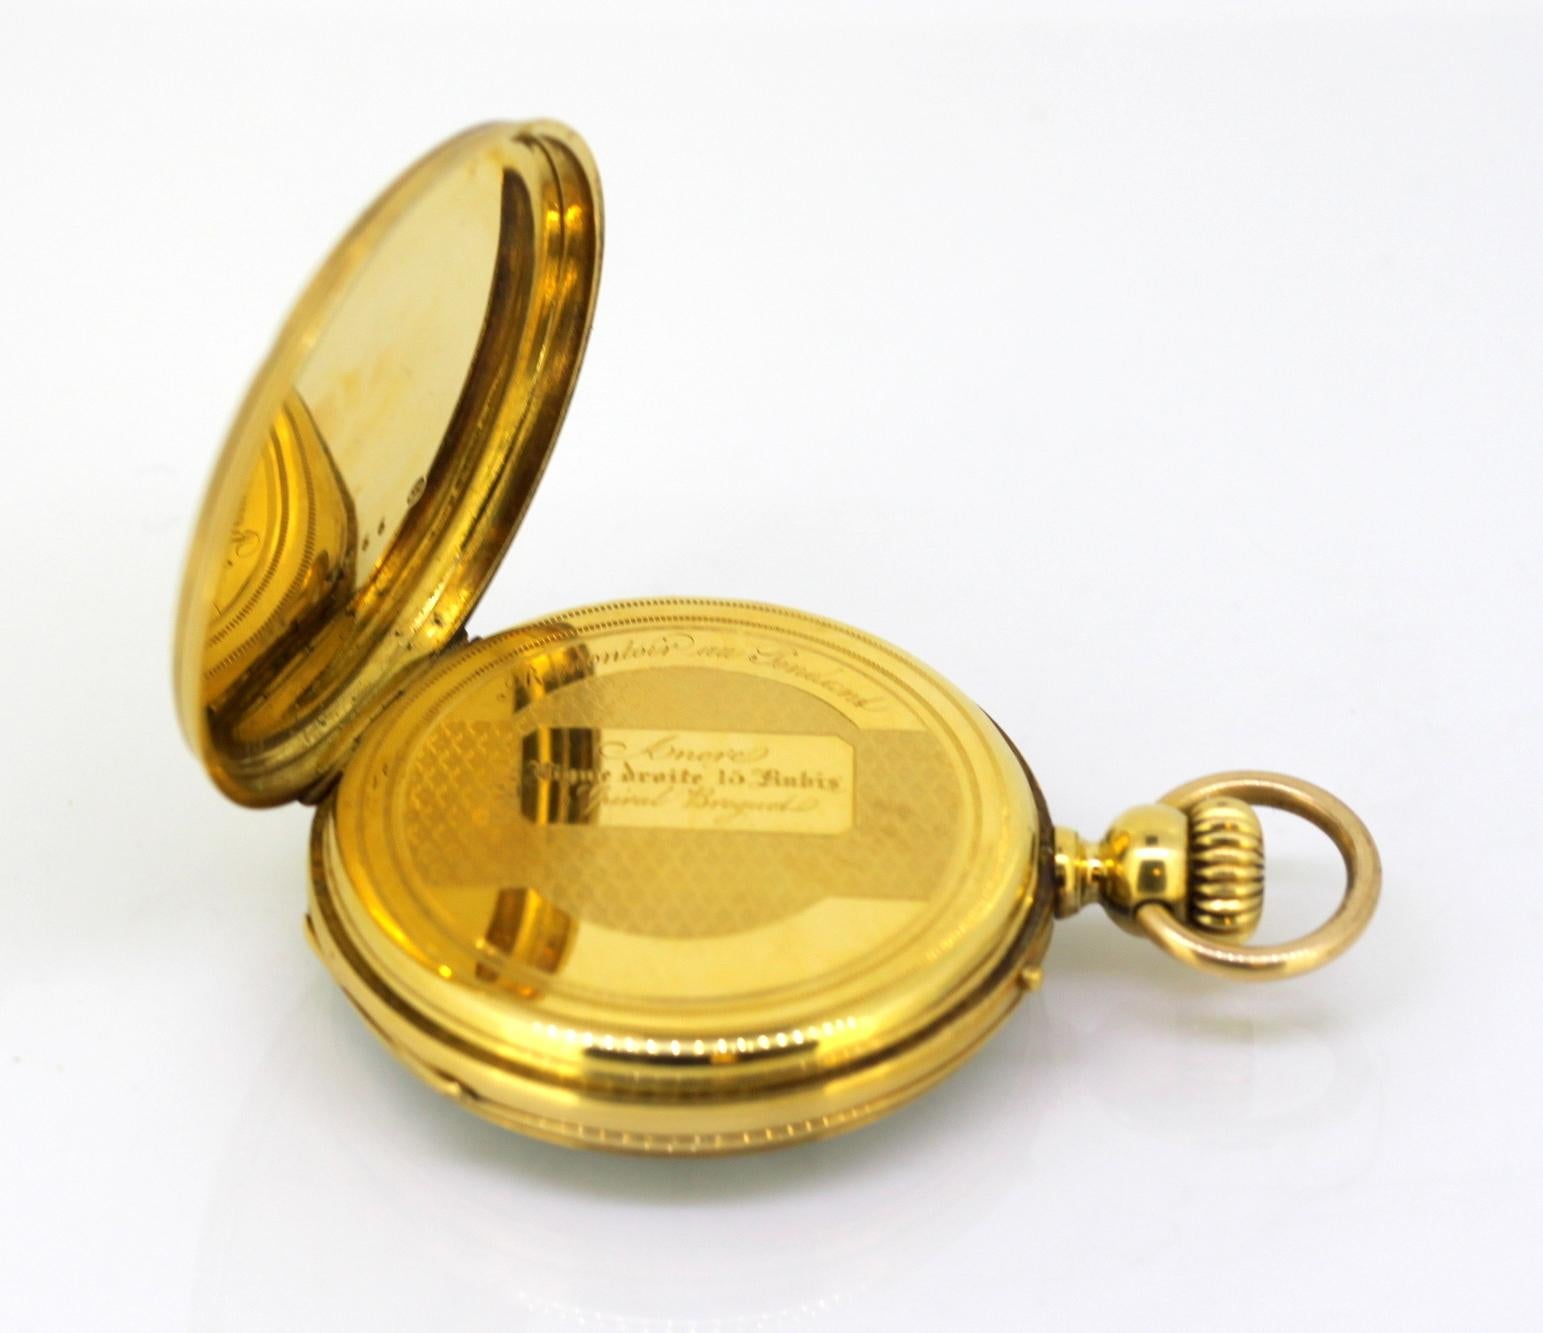 Antique Swiss 18 Karat Yellow Gold Pocket Watch by Amore Spiral Breguet, 1920s 4